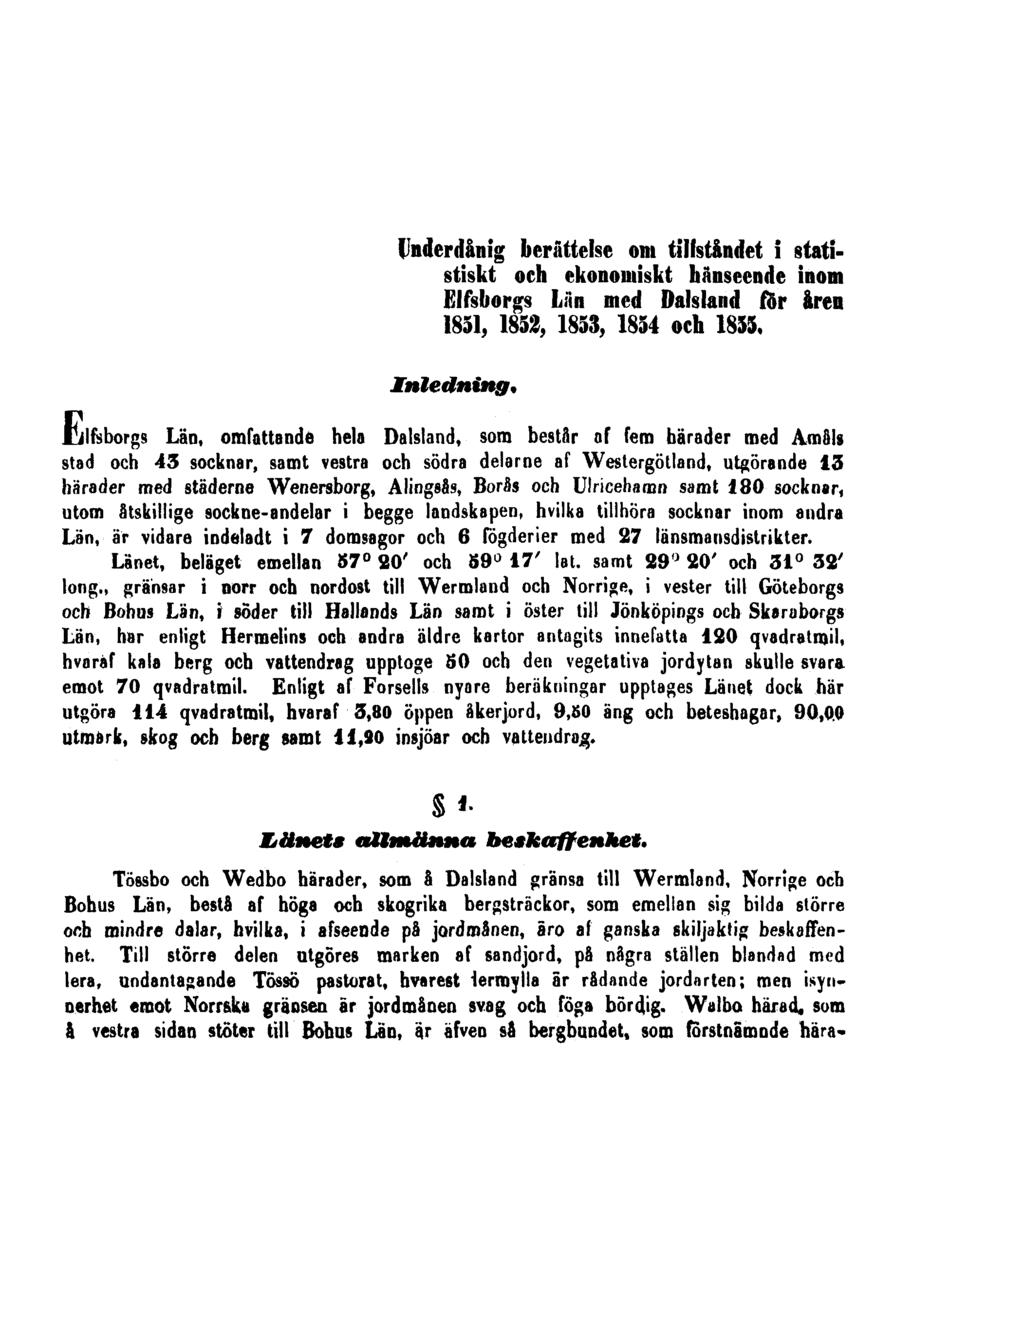 Underdånig berättelse om tillståndet i statistiskt och ekonomiskt hänseende inom Elfsborgs Län med Dalsland för åren 1851, 1852, 1853, 1854 och 1855. Inledning.